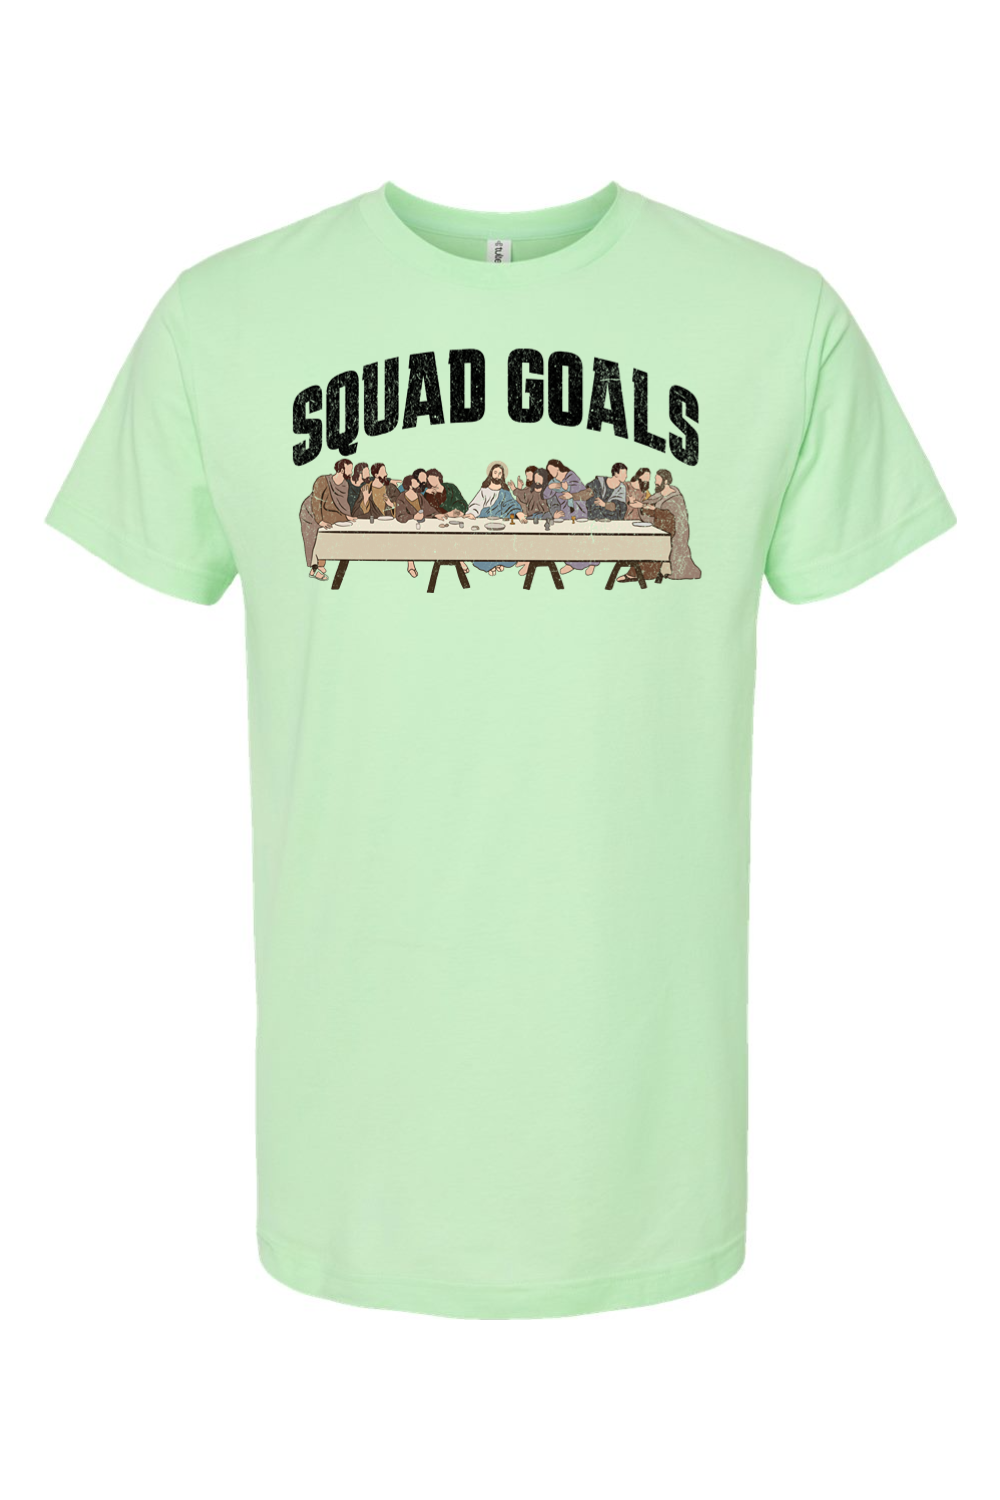 Squad Goals (Last Supper) - T-Shirt